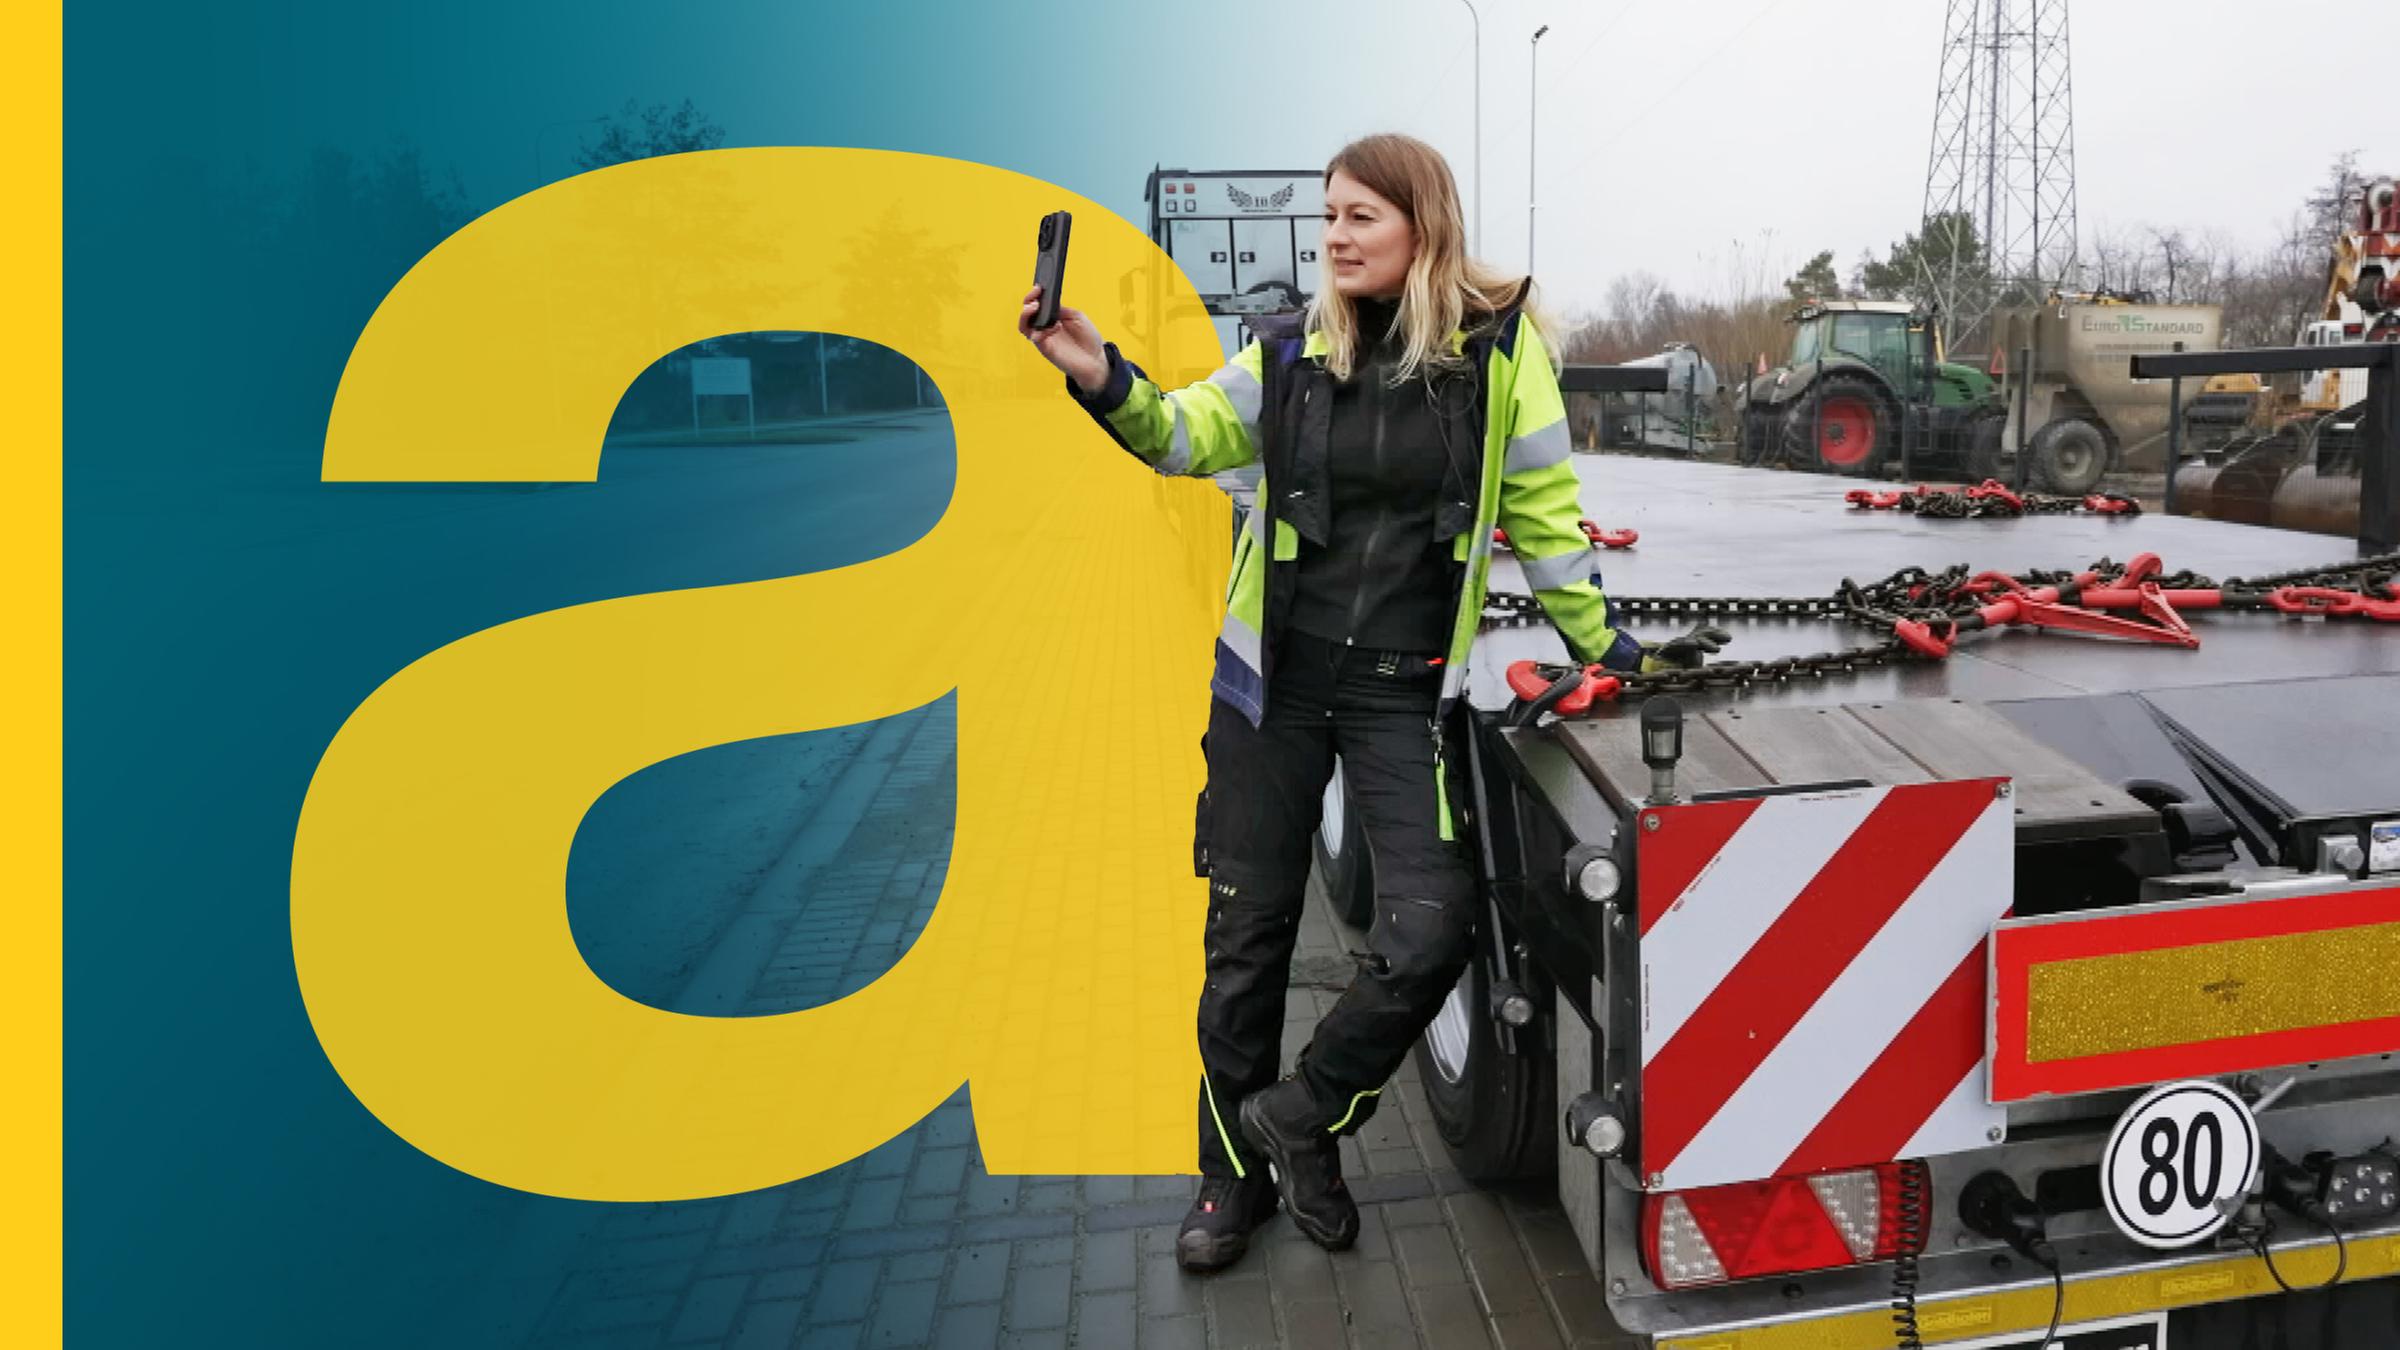 großes Auslandsjournal a im Vordergrund, daneben Frau steht mit Handy neben der Ladefläche von einem LKW